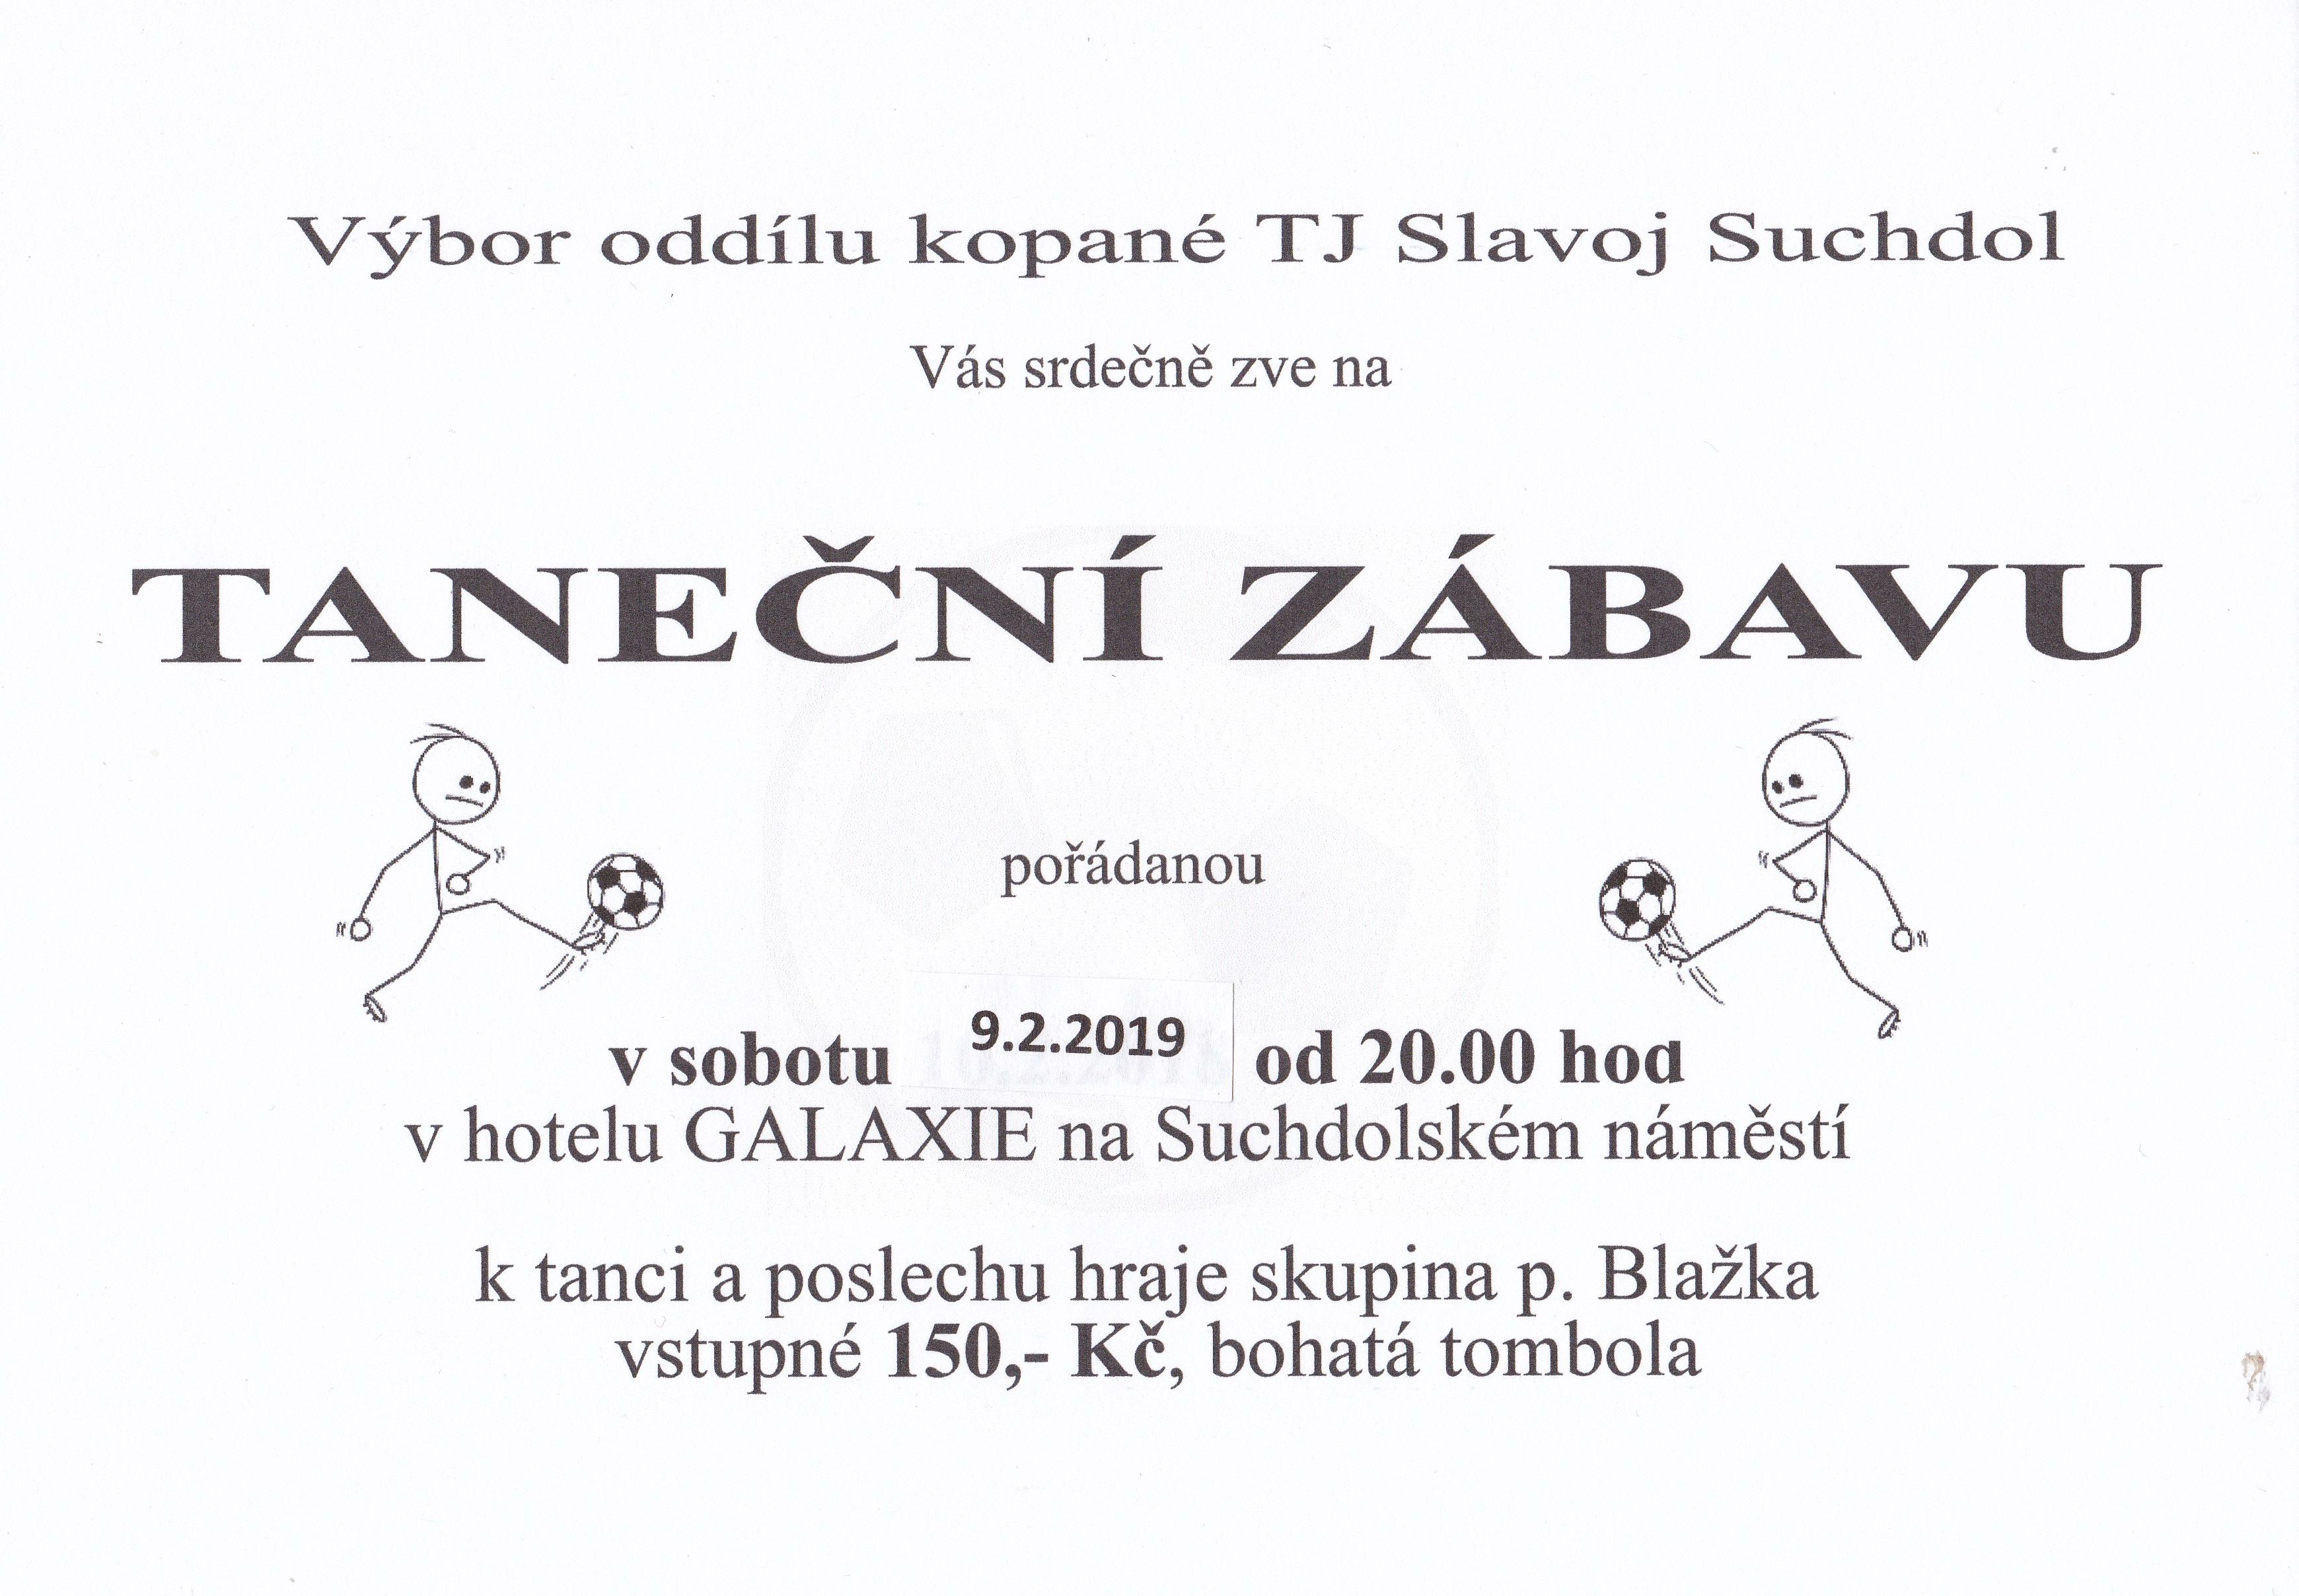 Taneční zábava TJ Slavoj Suchdol 9.2.2019